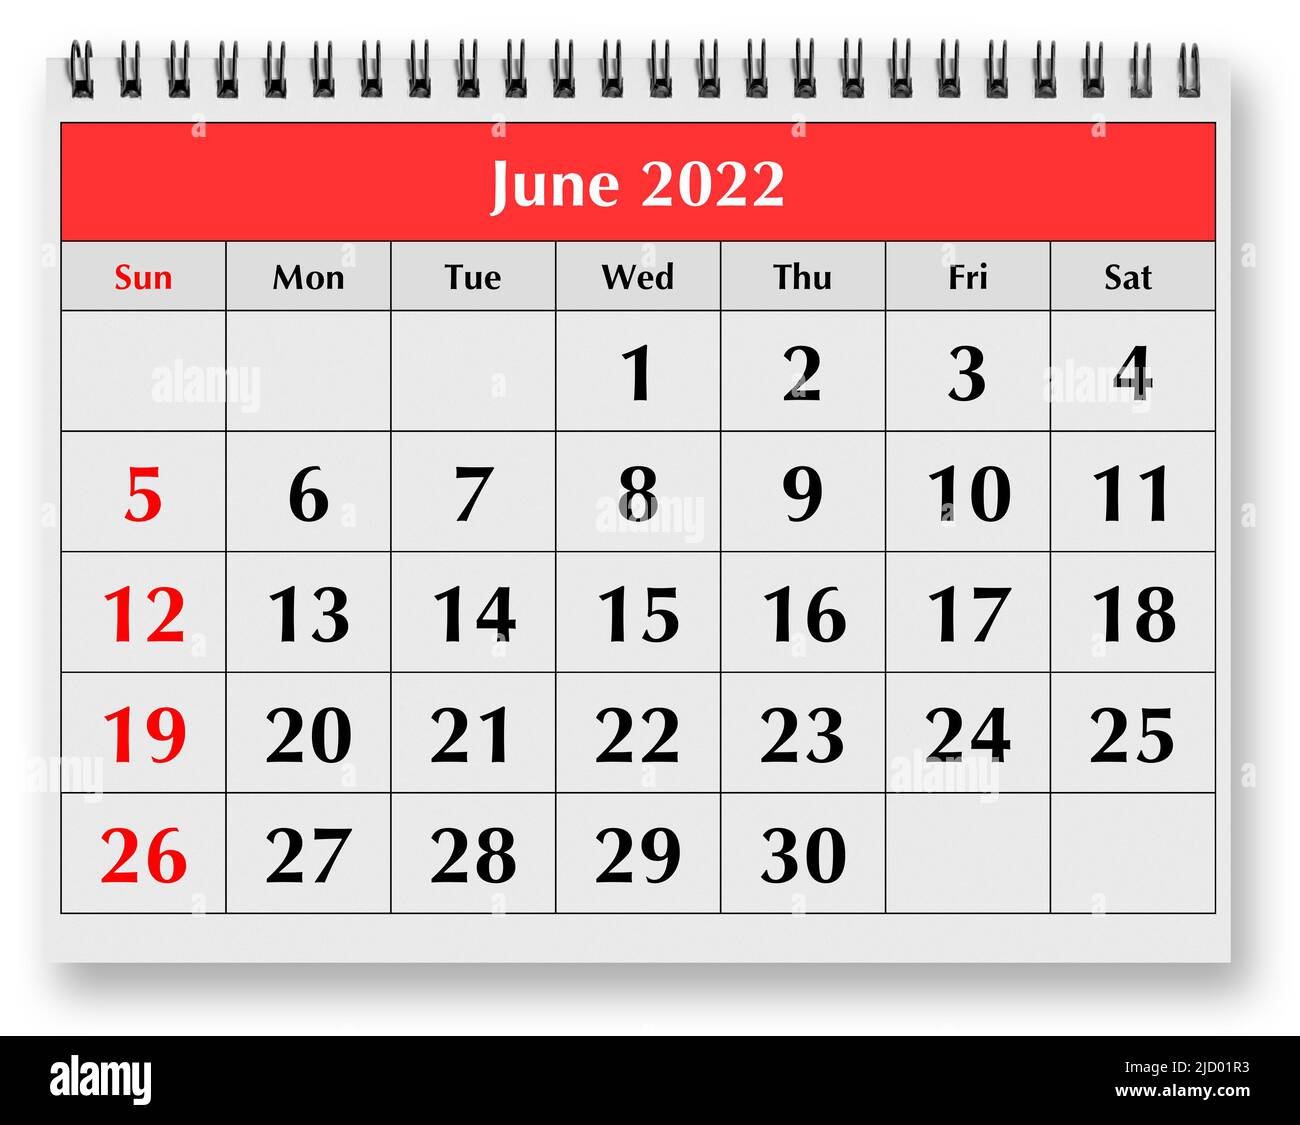 Calendario junio 2022 Imágenes recortadas de stock - Alamy